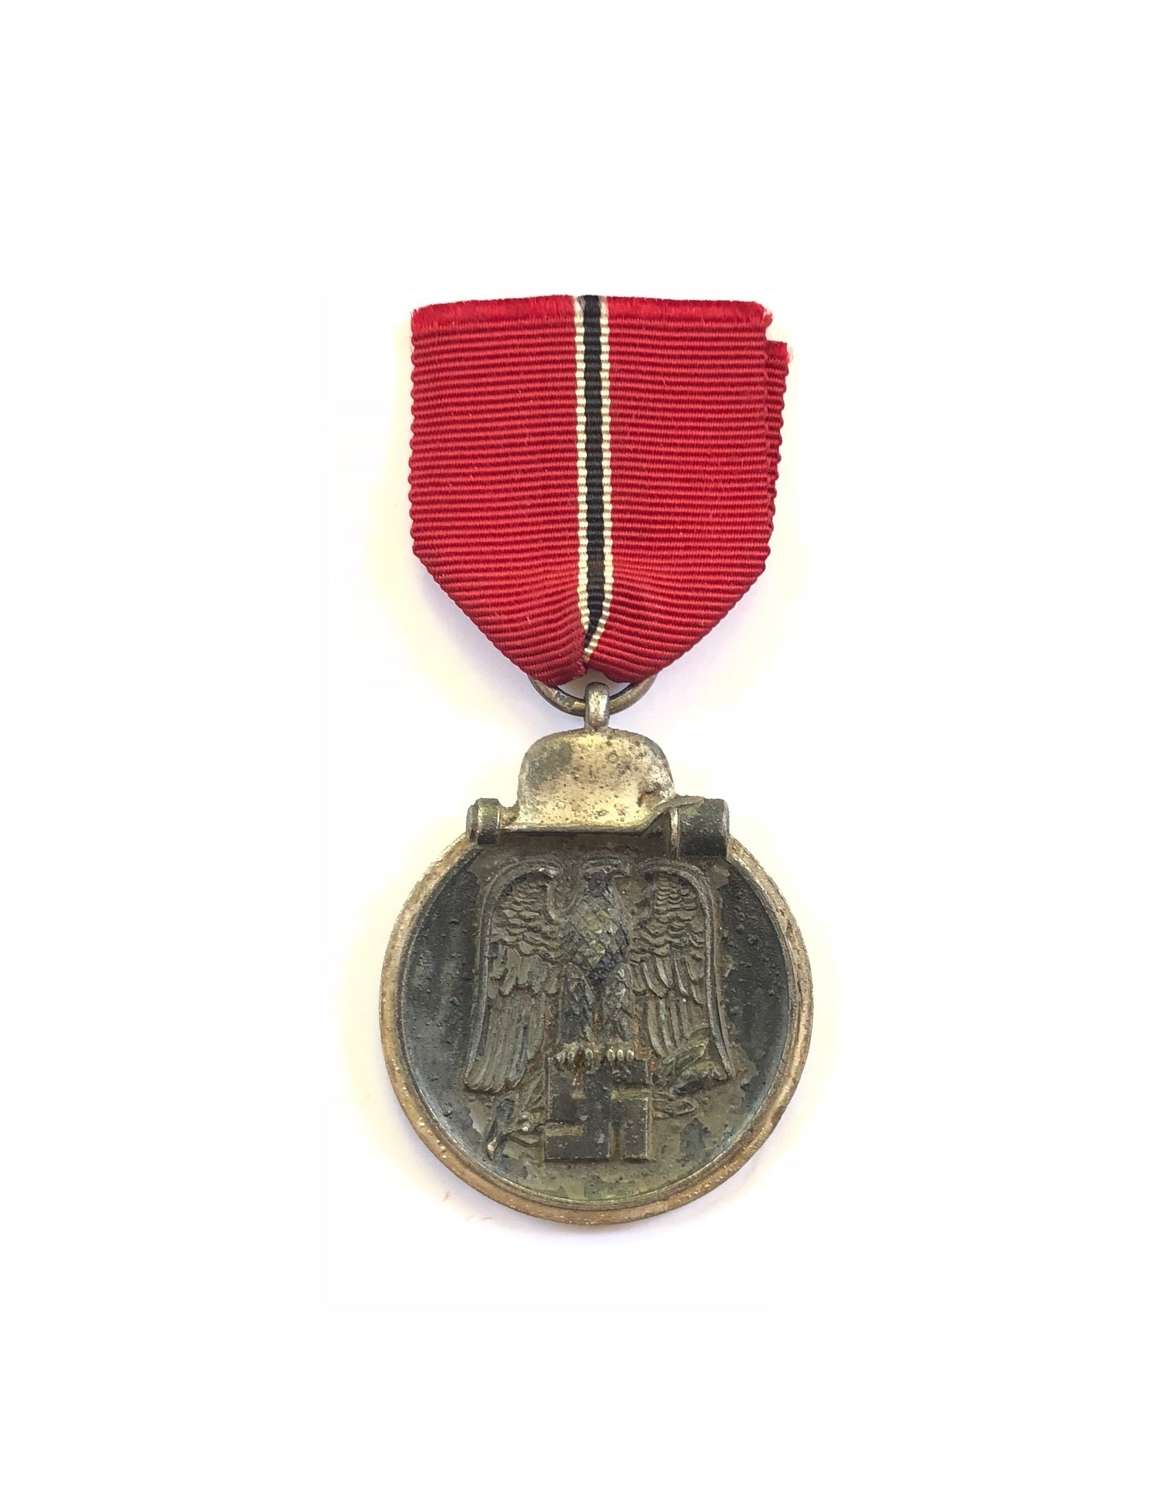 WW2 German Eastern Front Medal.